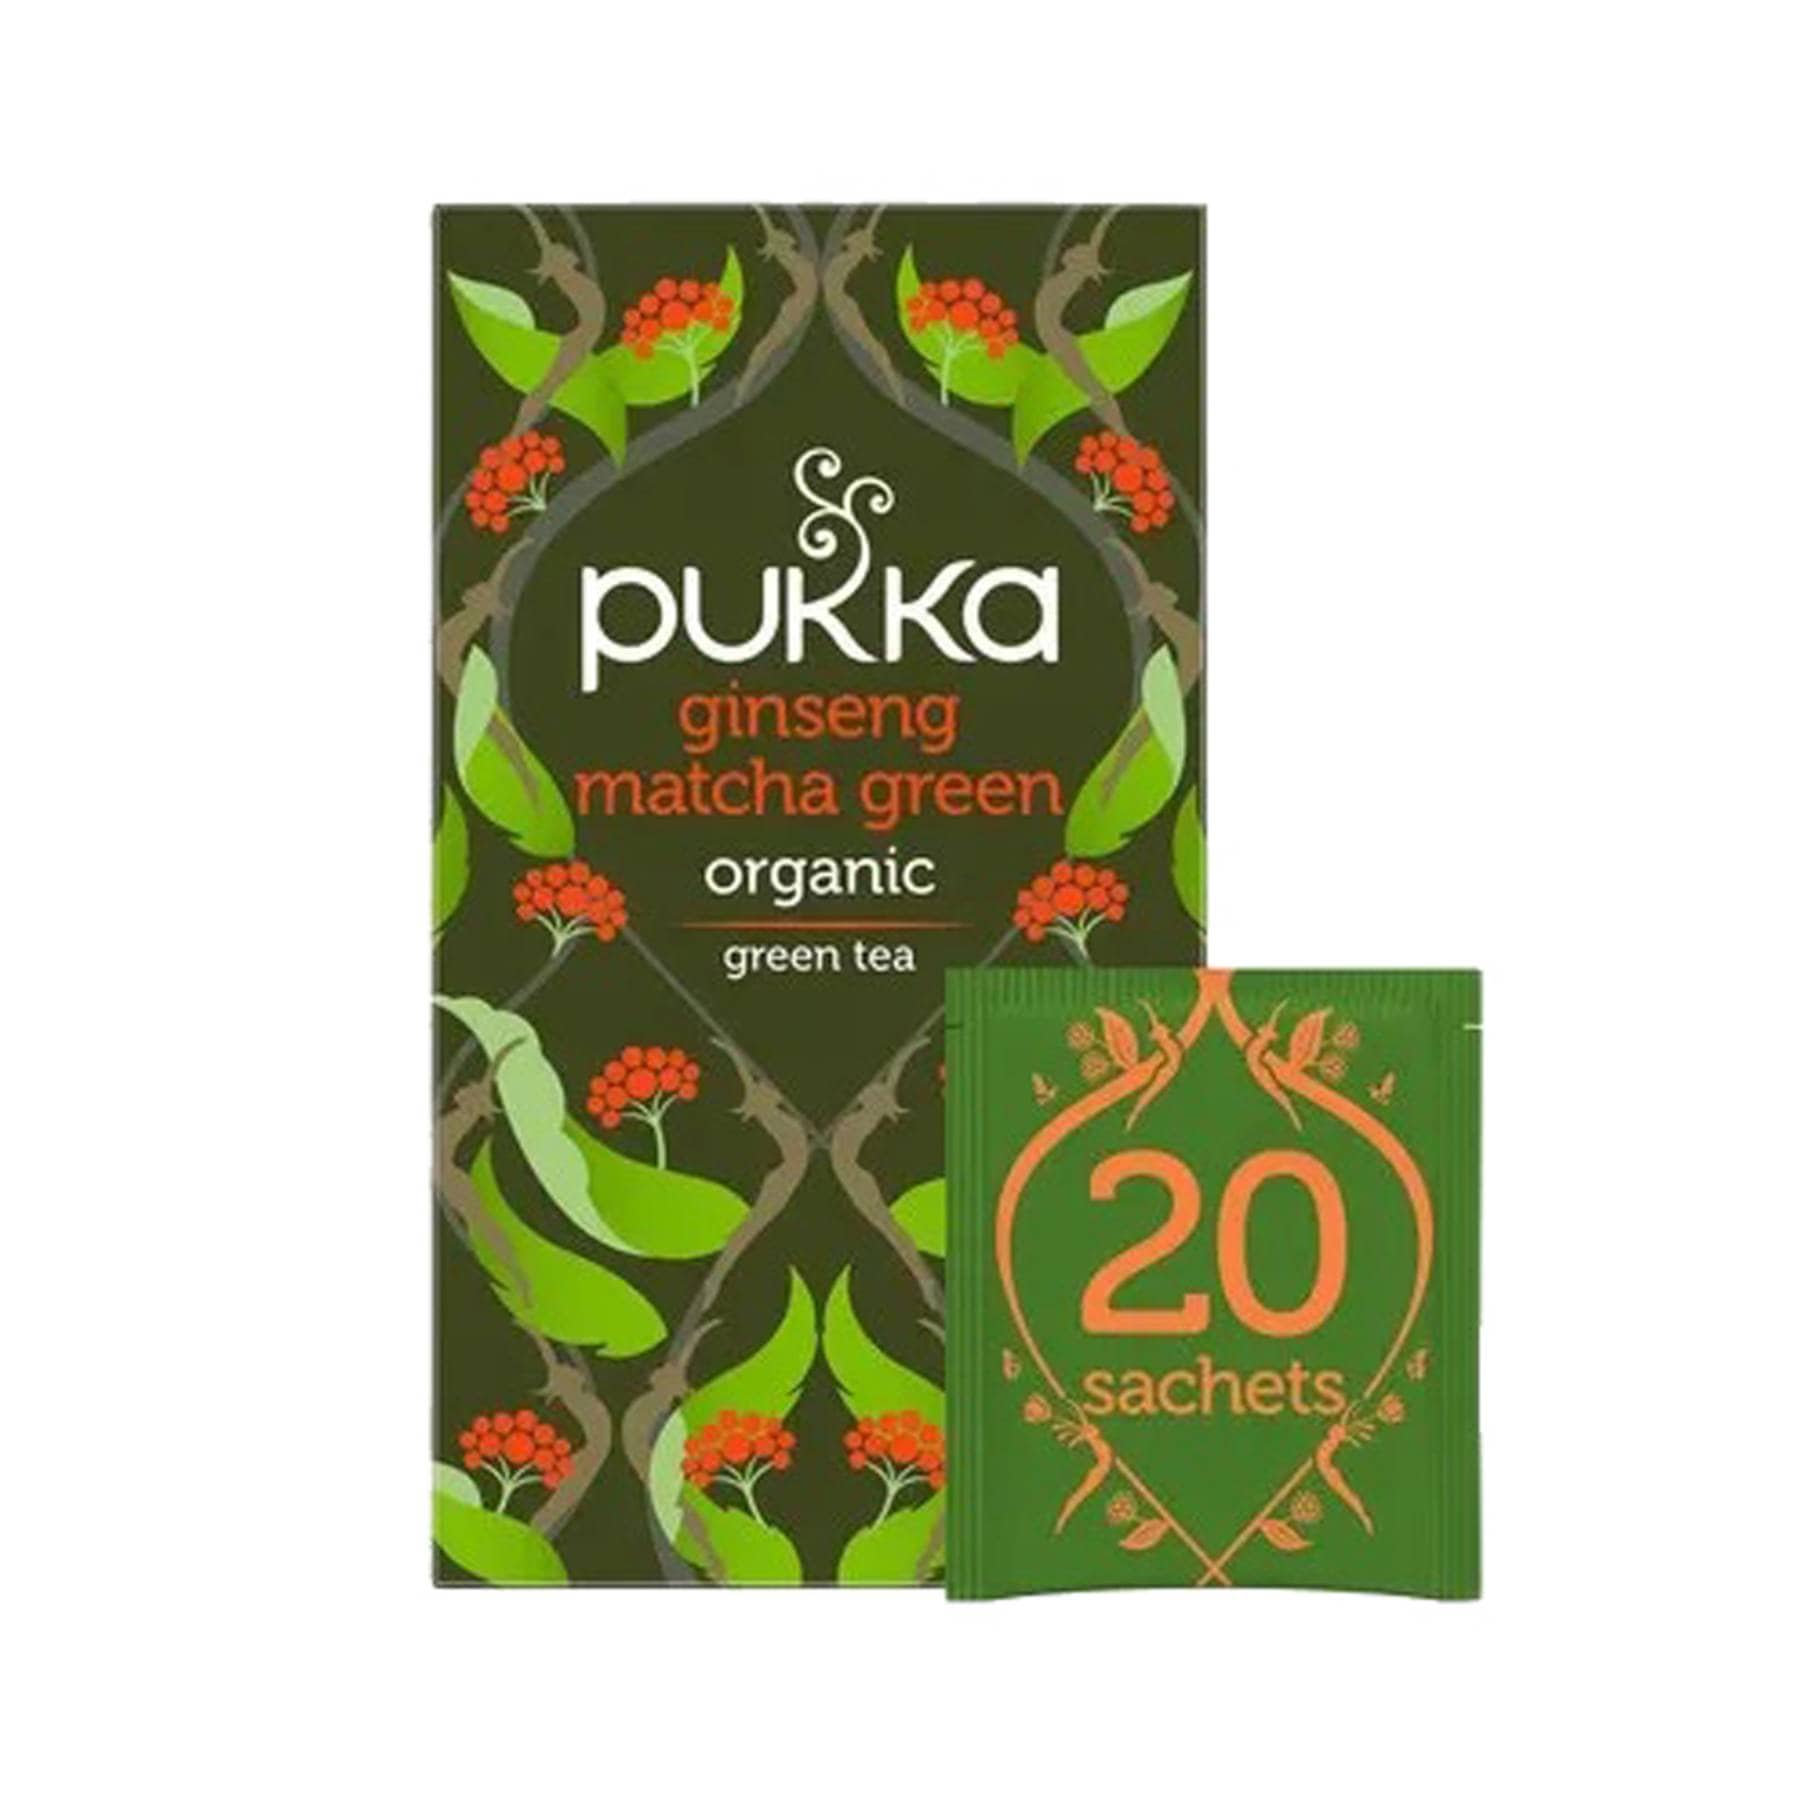 Pukka ginseng matcha green 20 tea bags